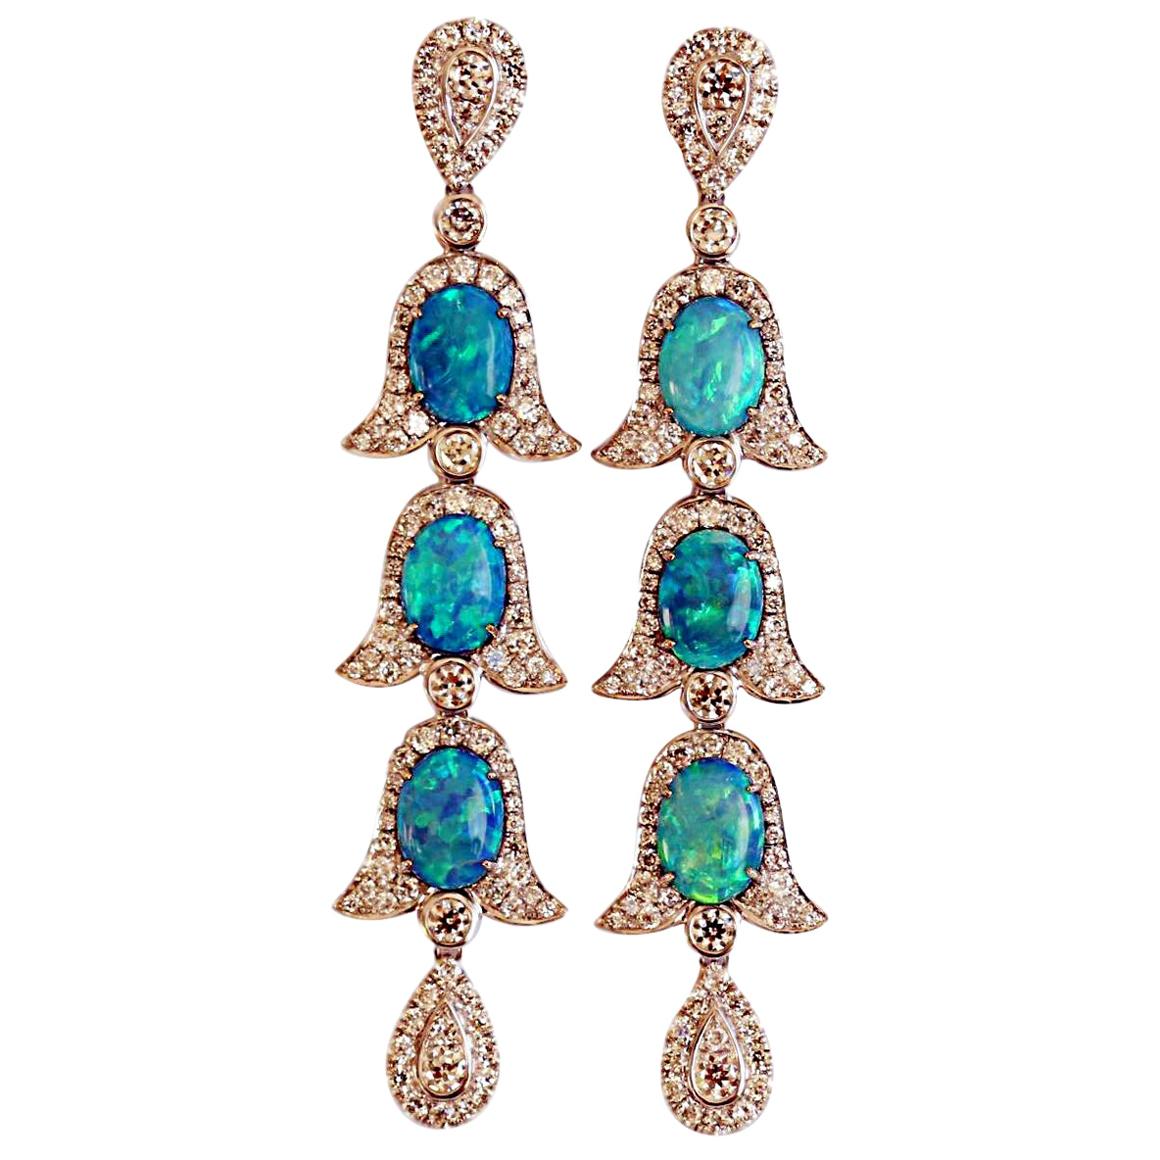 Ohrringe im edwardianischen Stil mit Opal und Diamanten